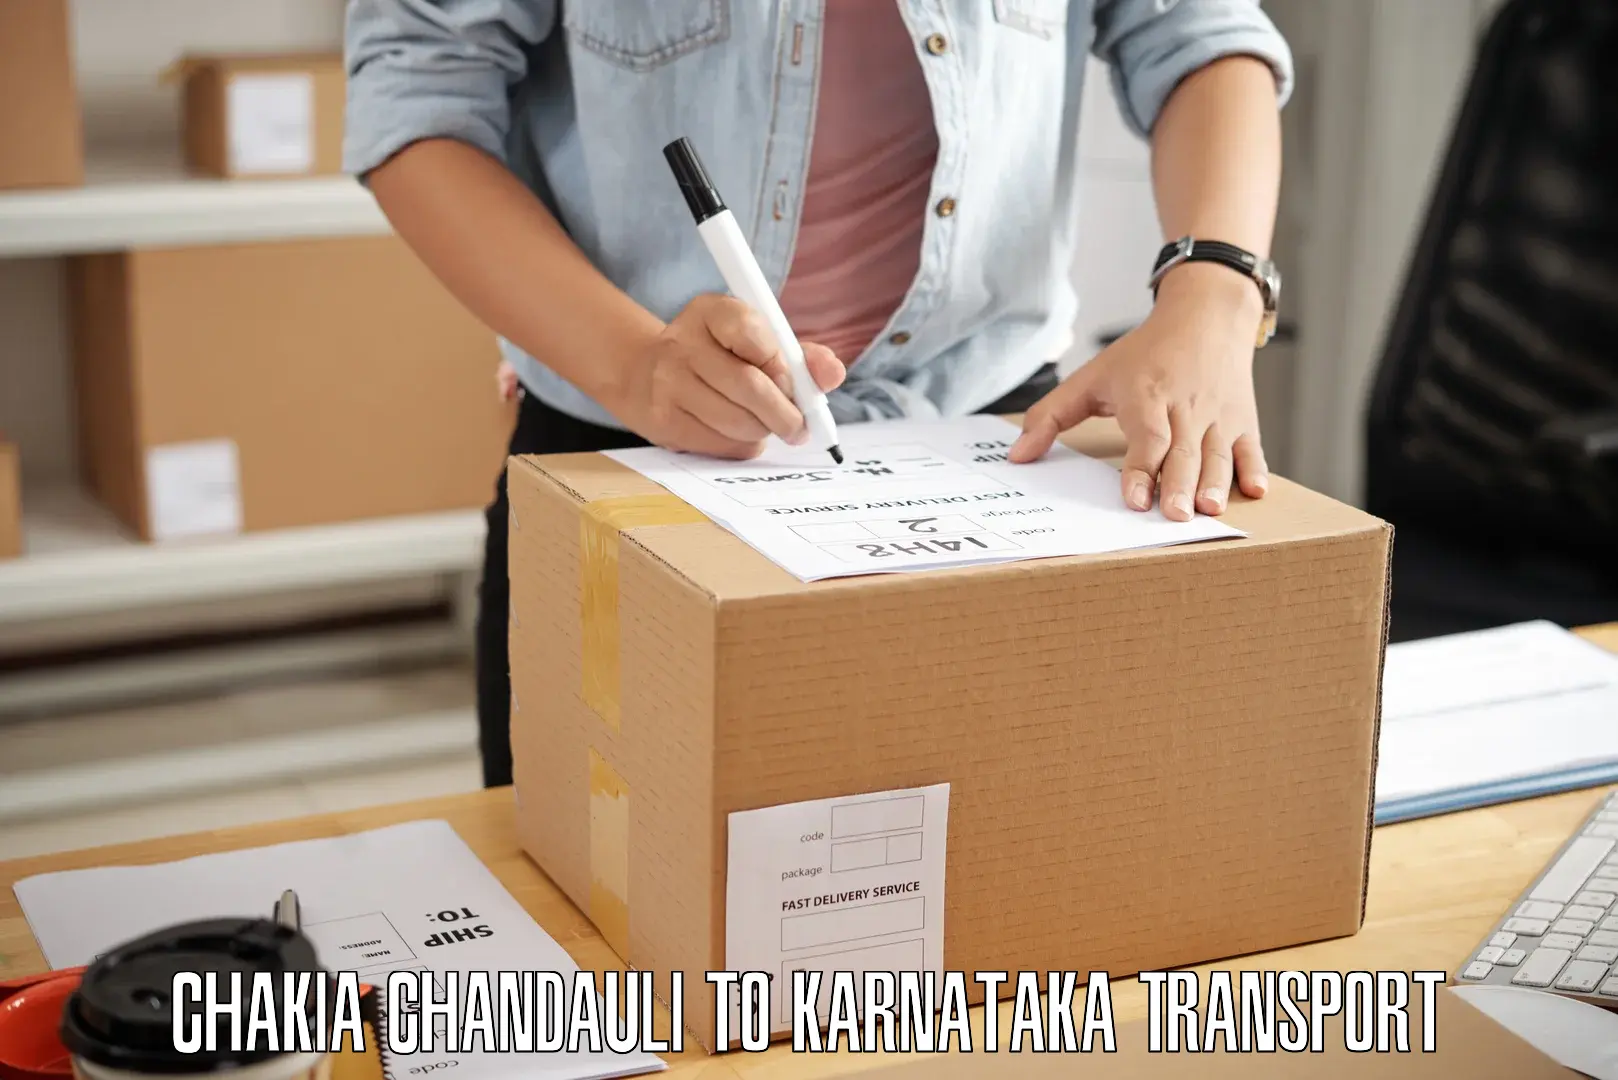 Pick up transport service Chakia Chandauli to Karnataka